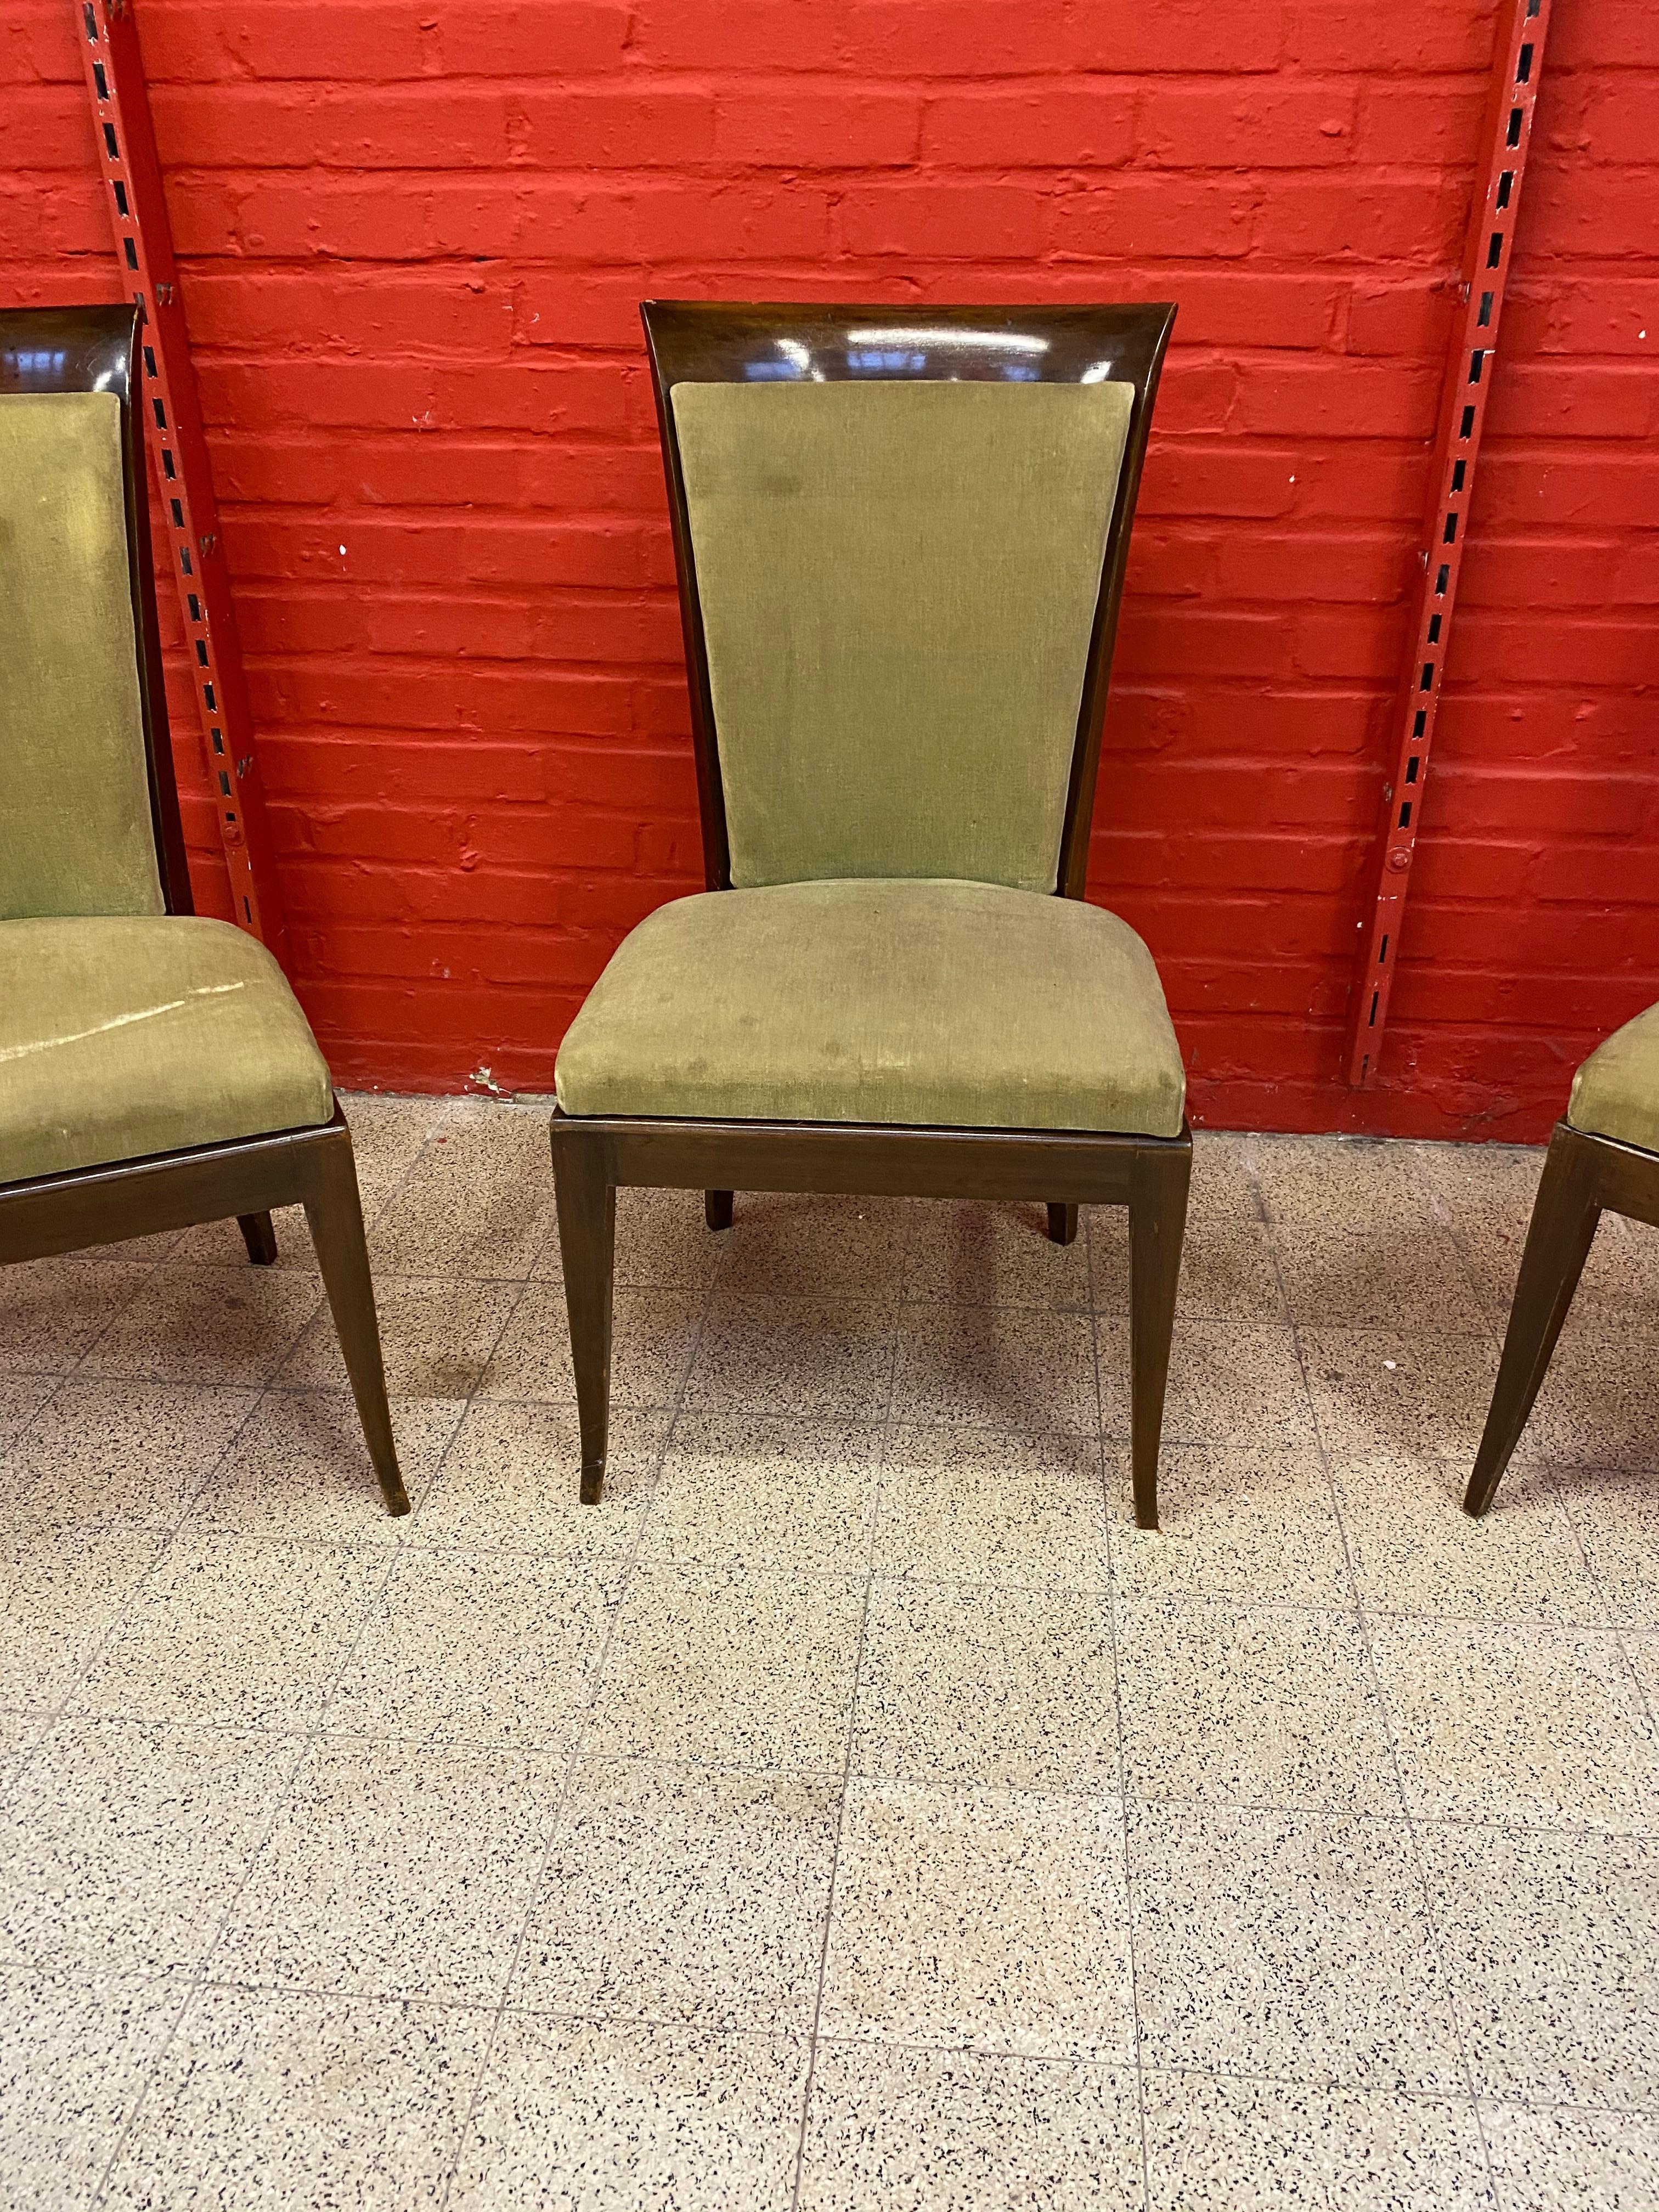 De Coene, 3 große Art Deco Stühle aus massivem Mahagoni und Samt, um 1930
kleine Chips auf 1 Stuhl.